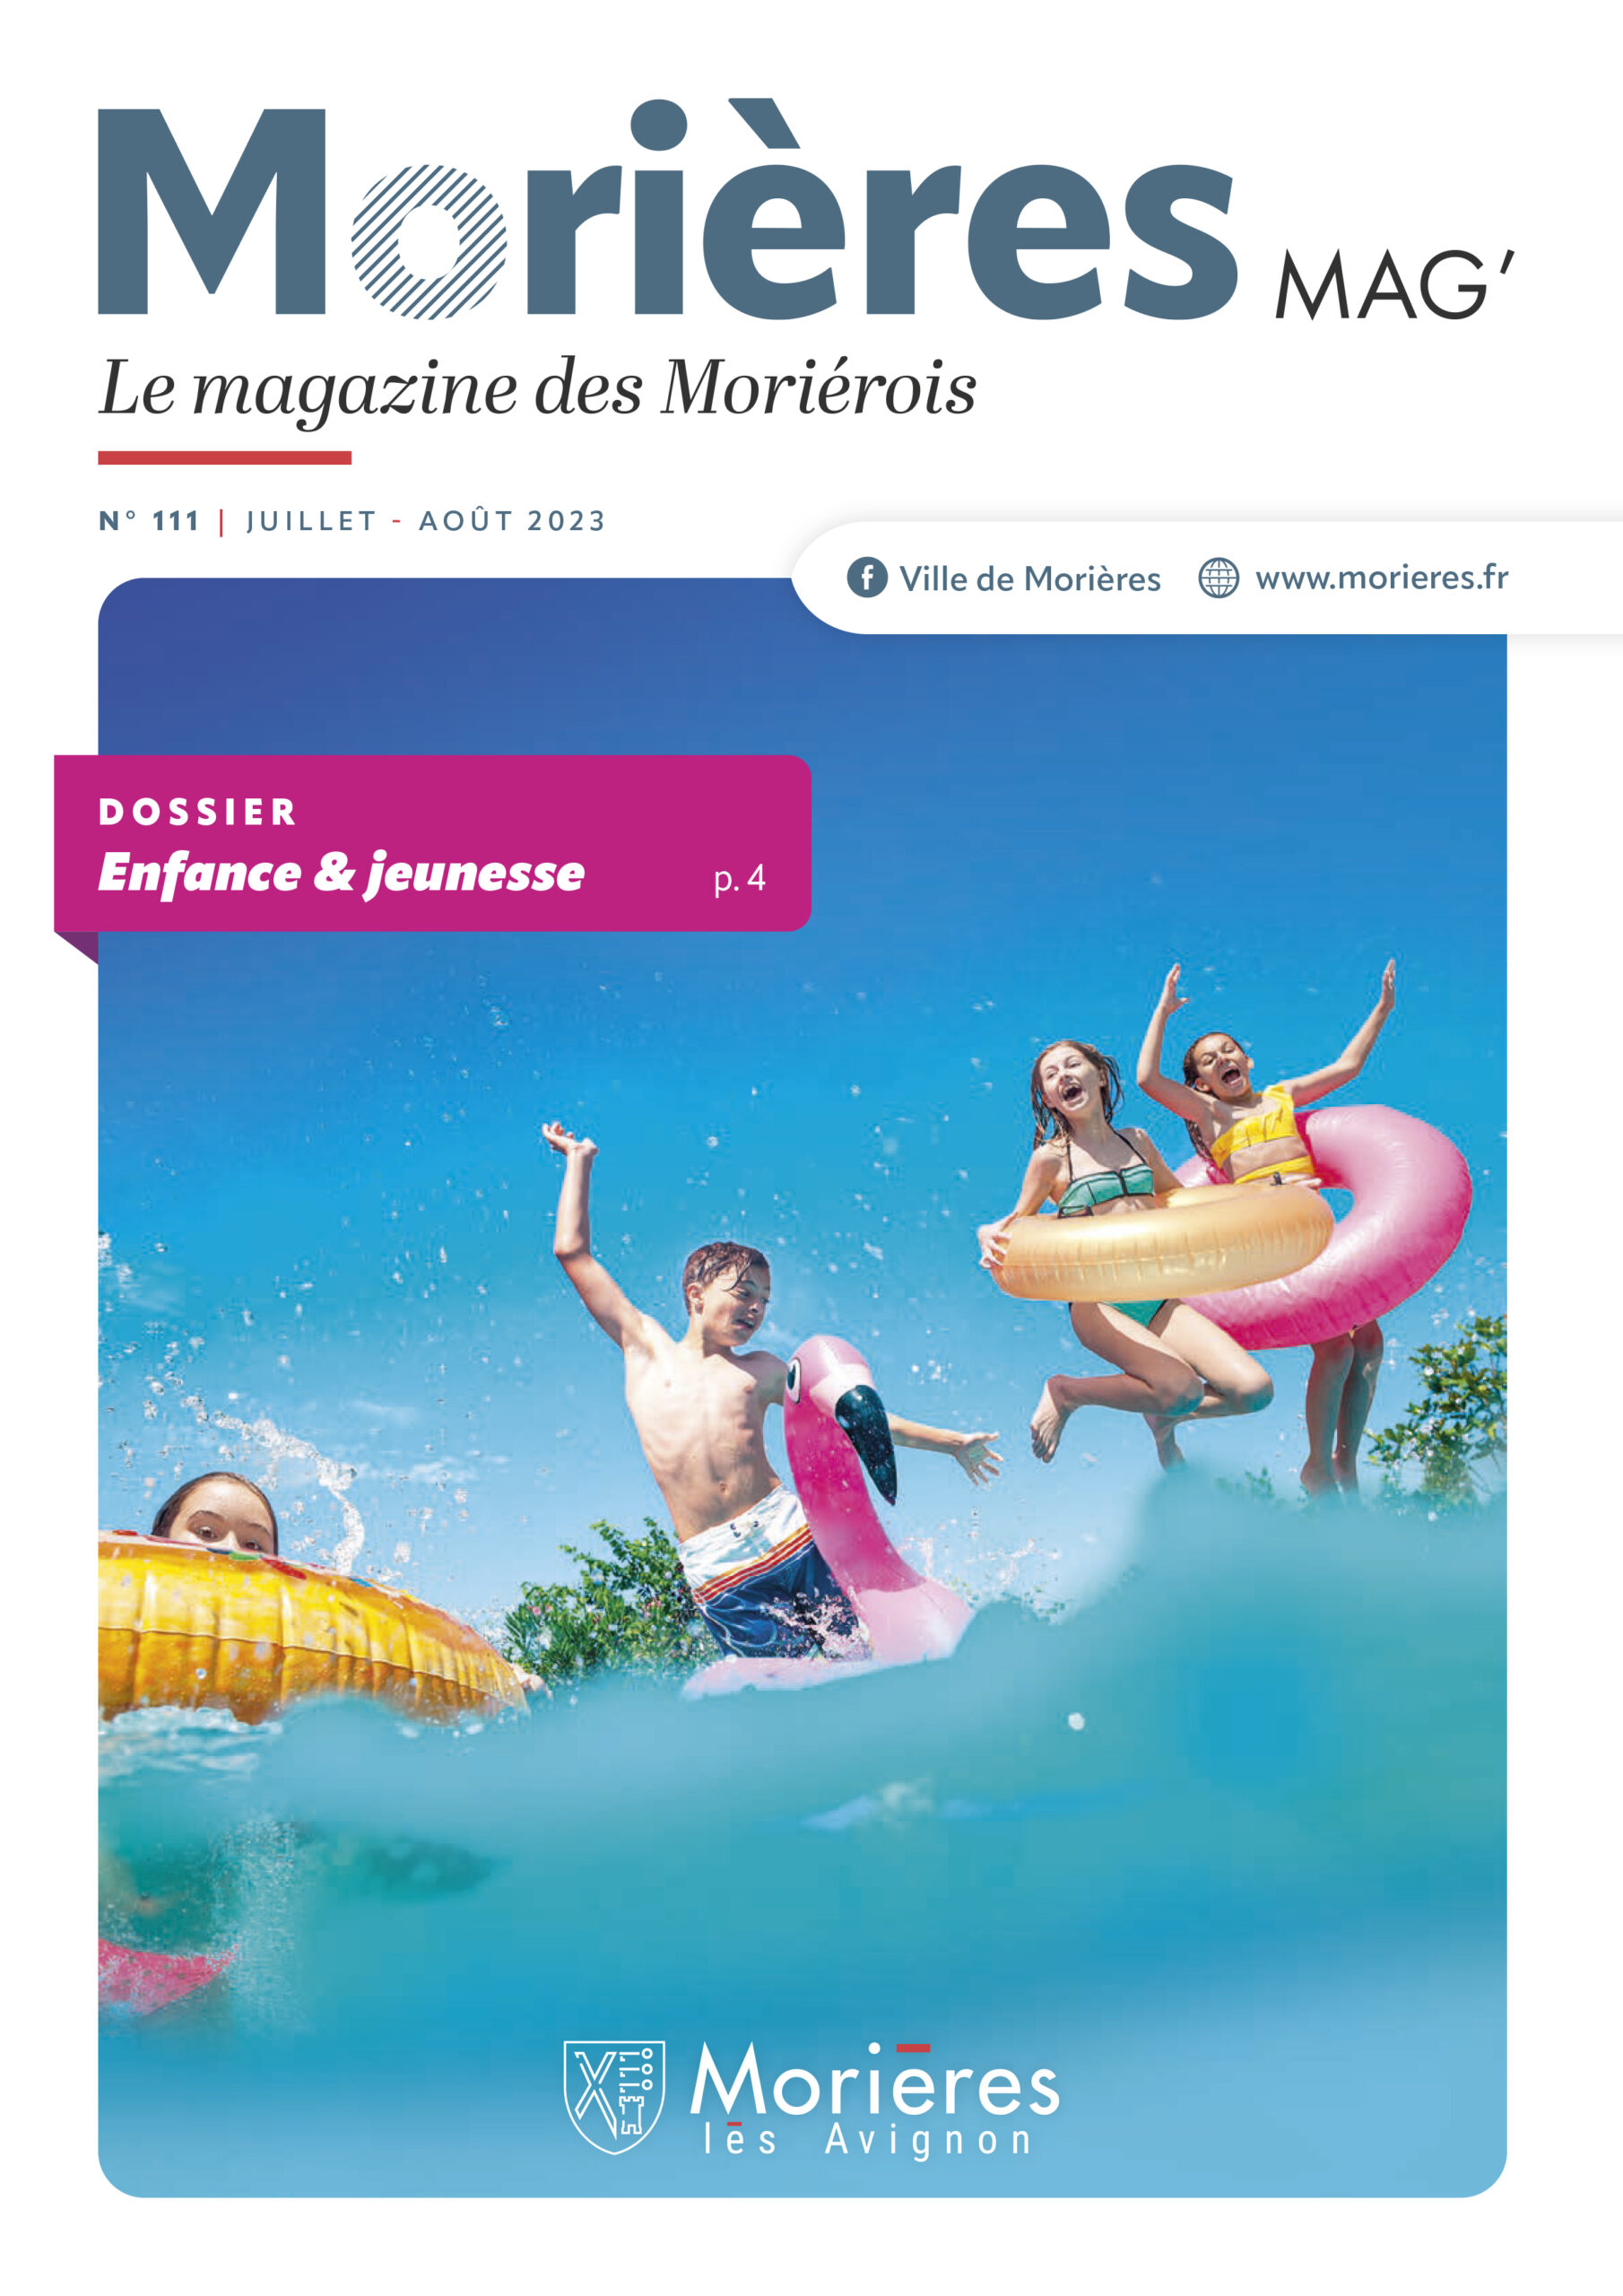 Morières Mag' n°107